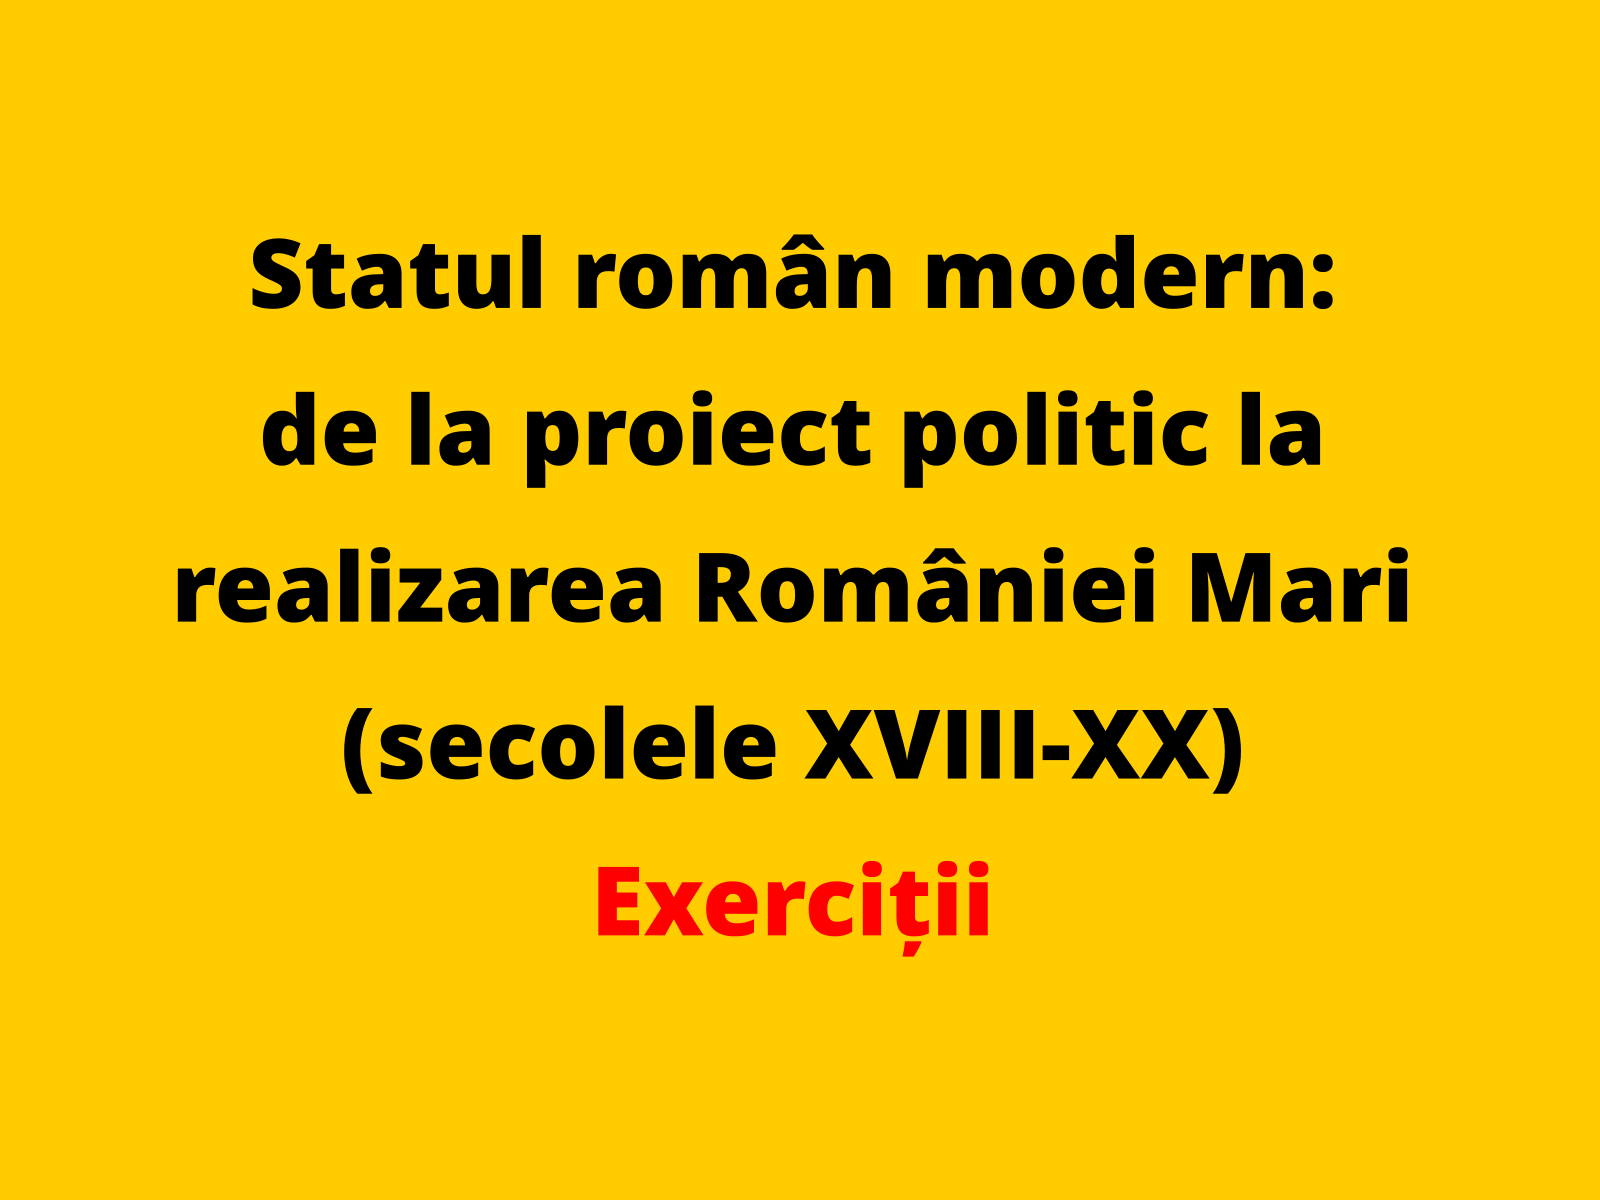 Menționați o caracteristică a proiectelor politice elaborate în spațiul românesc în prima jumătate a secolului al XIX-lea